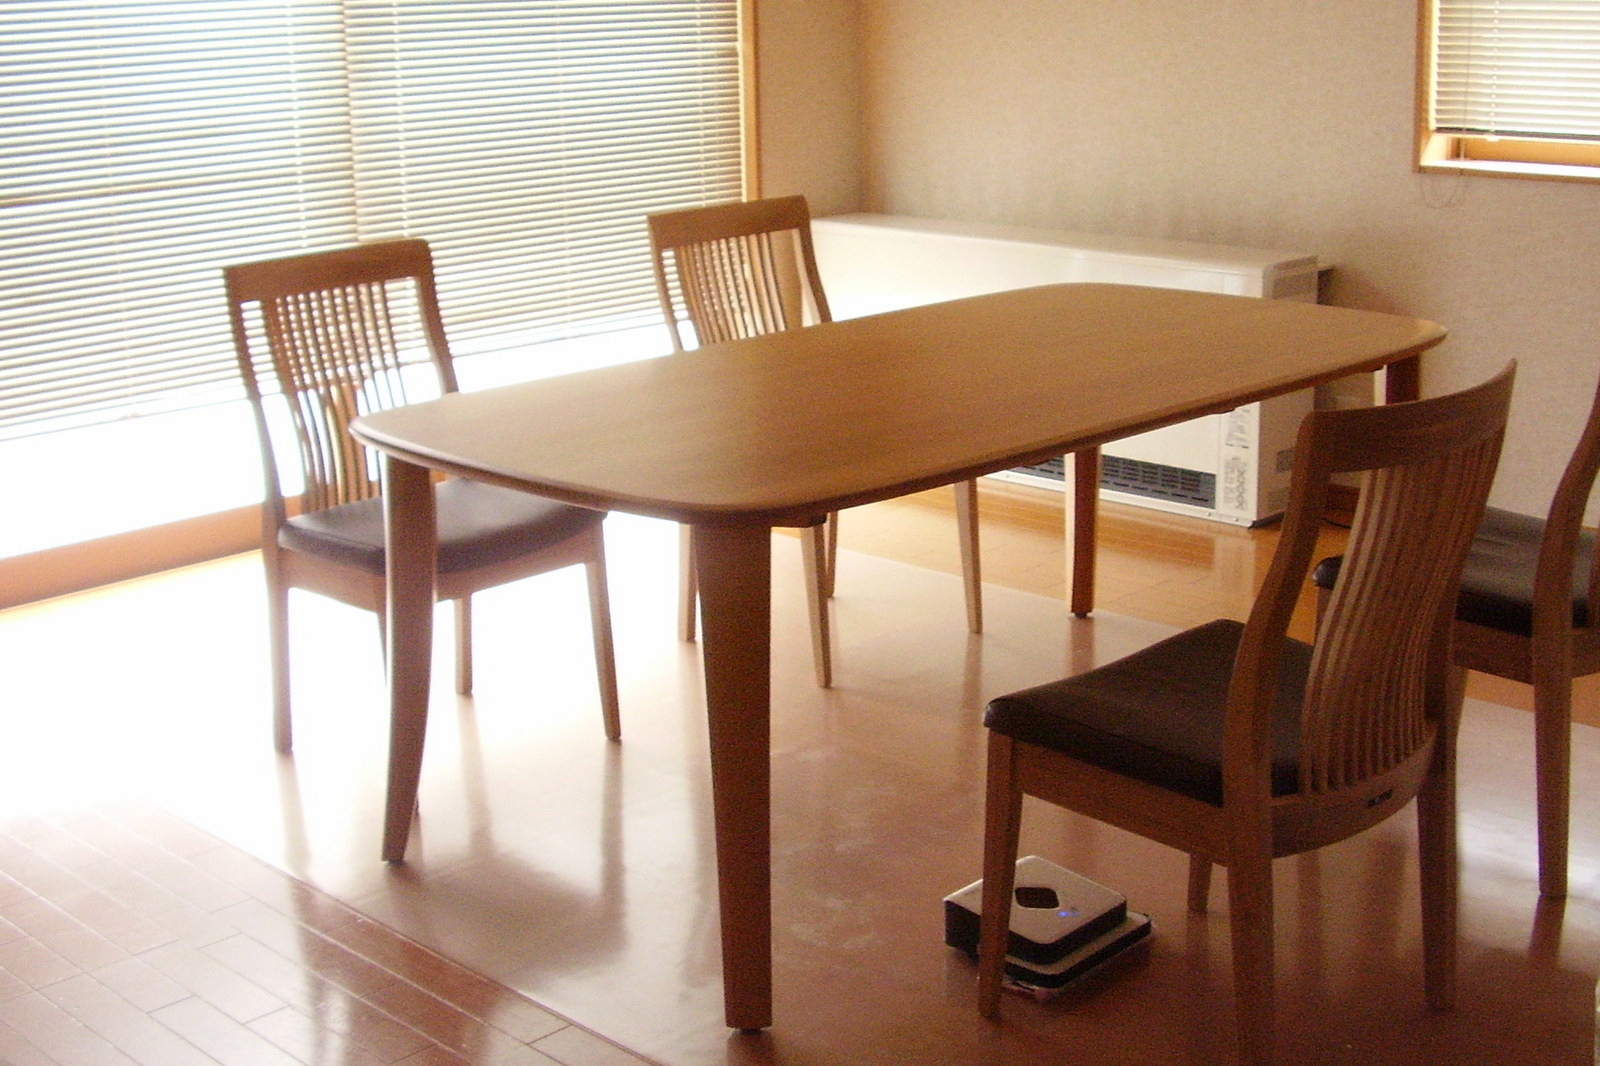 ナチュラル色の楢（なら）材オーバール国産テーブルと軽くて幅広の国産椅子